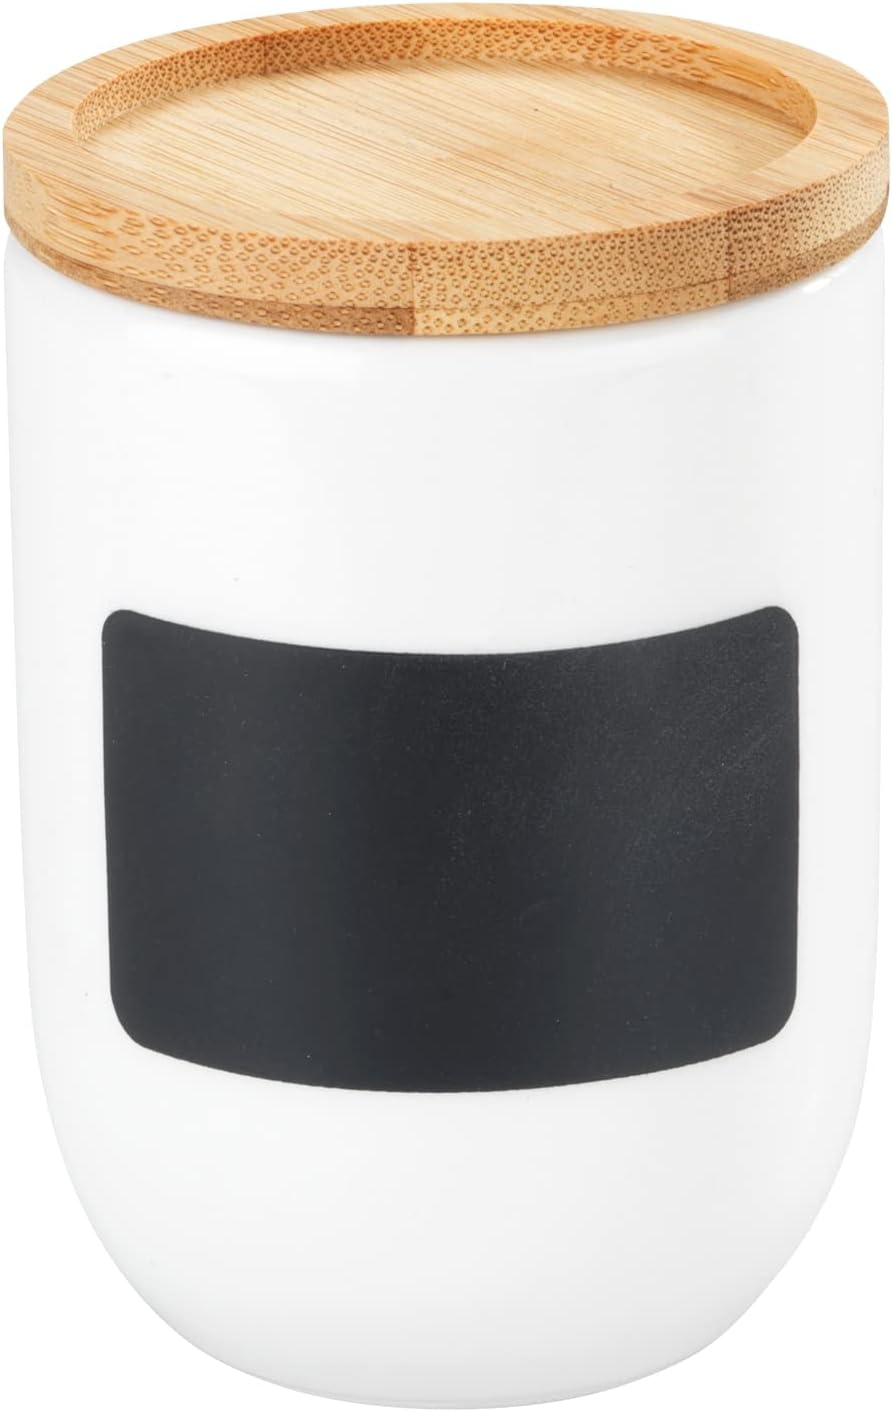 Gewürzdose Waia, Keramikdose mit Deckel aus Bambus und Silikonring zur luftdichten und aromafrischen Aufbewahrung, individuelle Beschriftung, Fassungsvermögen 100 ml, (B/T x H): Ø 6 x 9 cm, Weiß